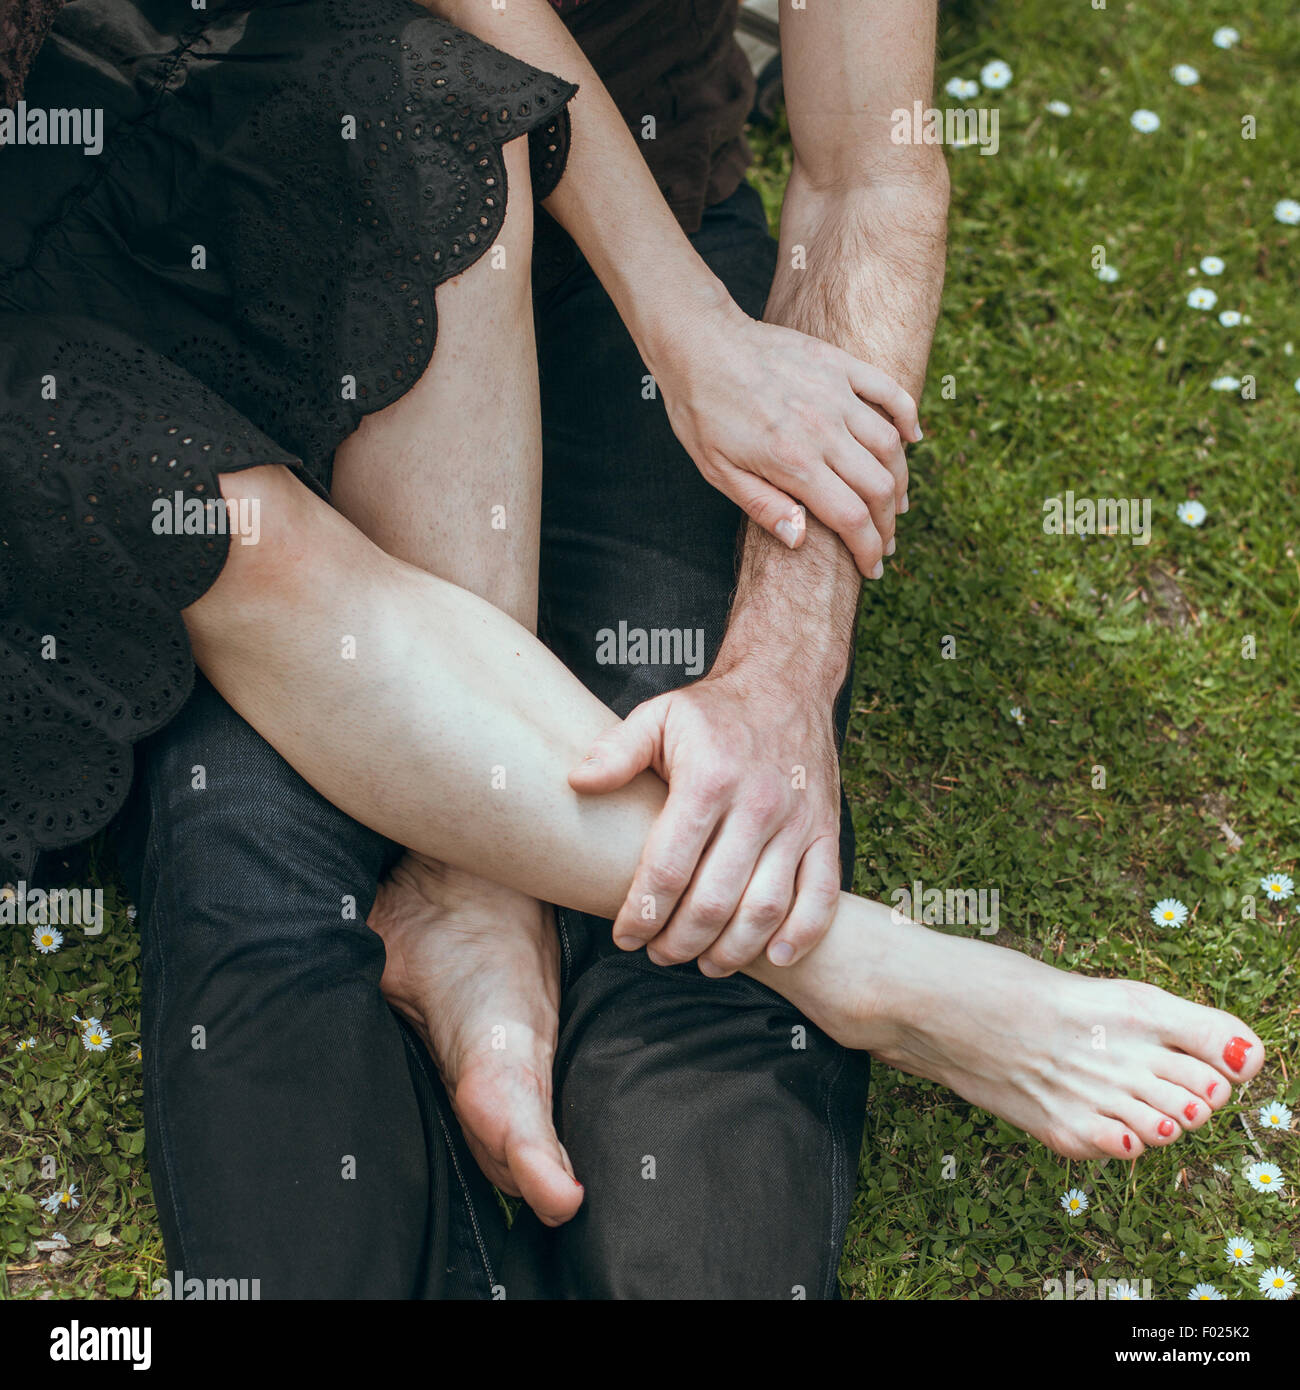 Nahaufnahme eines reifen Mannes, eine reife Frau die Füße in der hand  Stockfotografie - Alamy